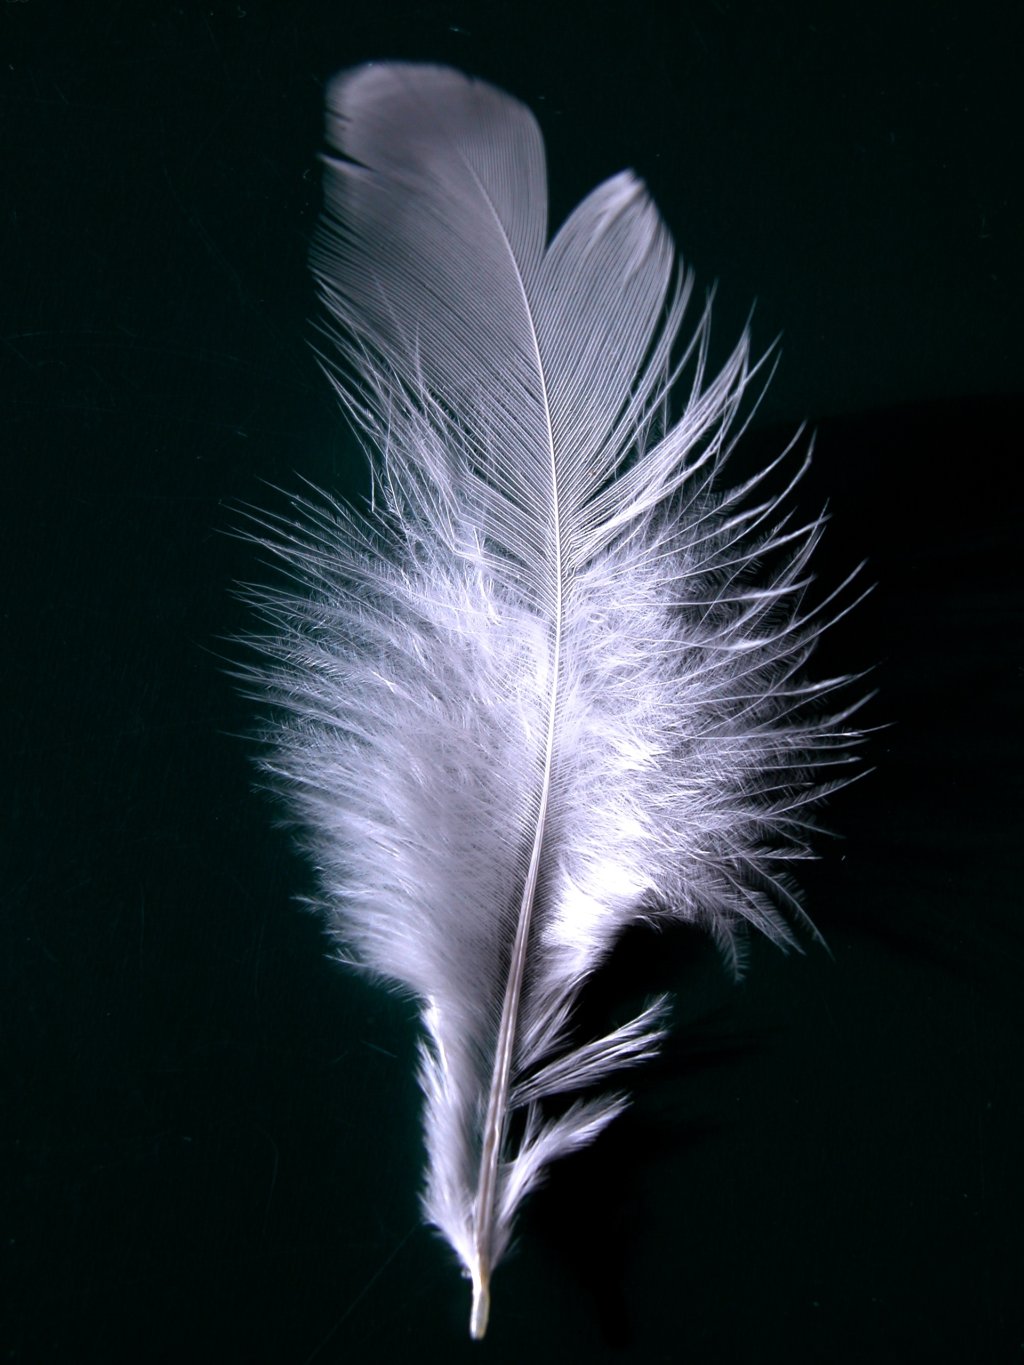 White feather - Wikipedia, the free encyclopedia